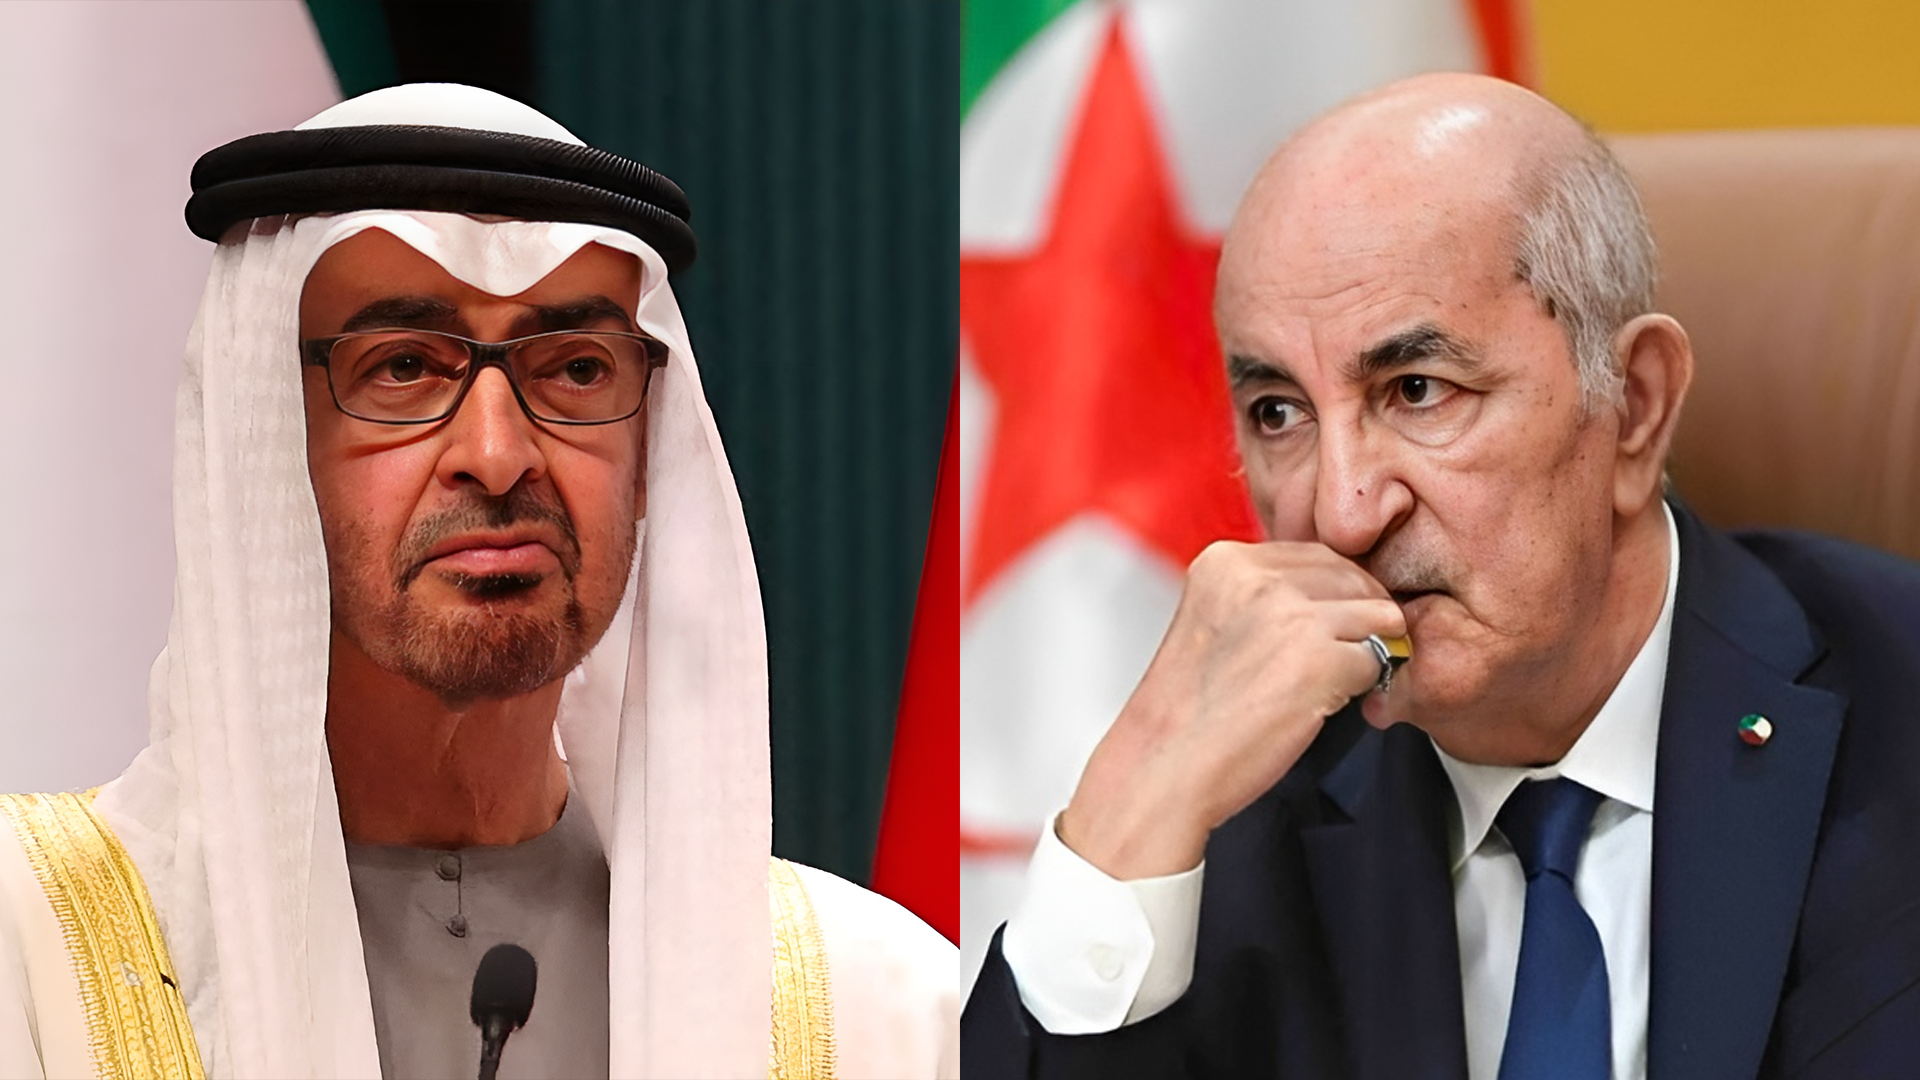 Qu’est-ce qui empêche Alger de rompre avec Dubaï ?